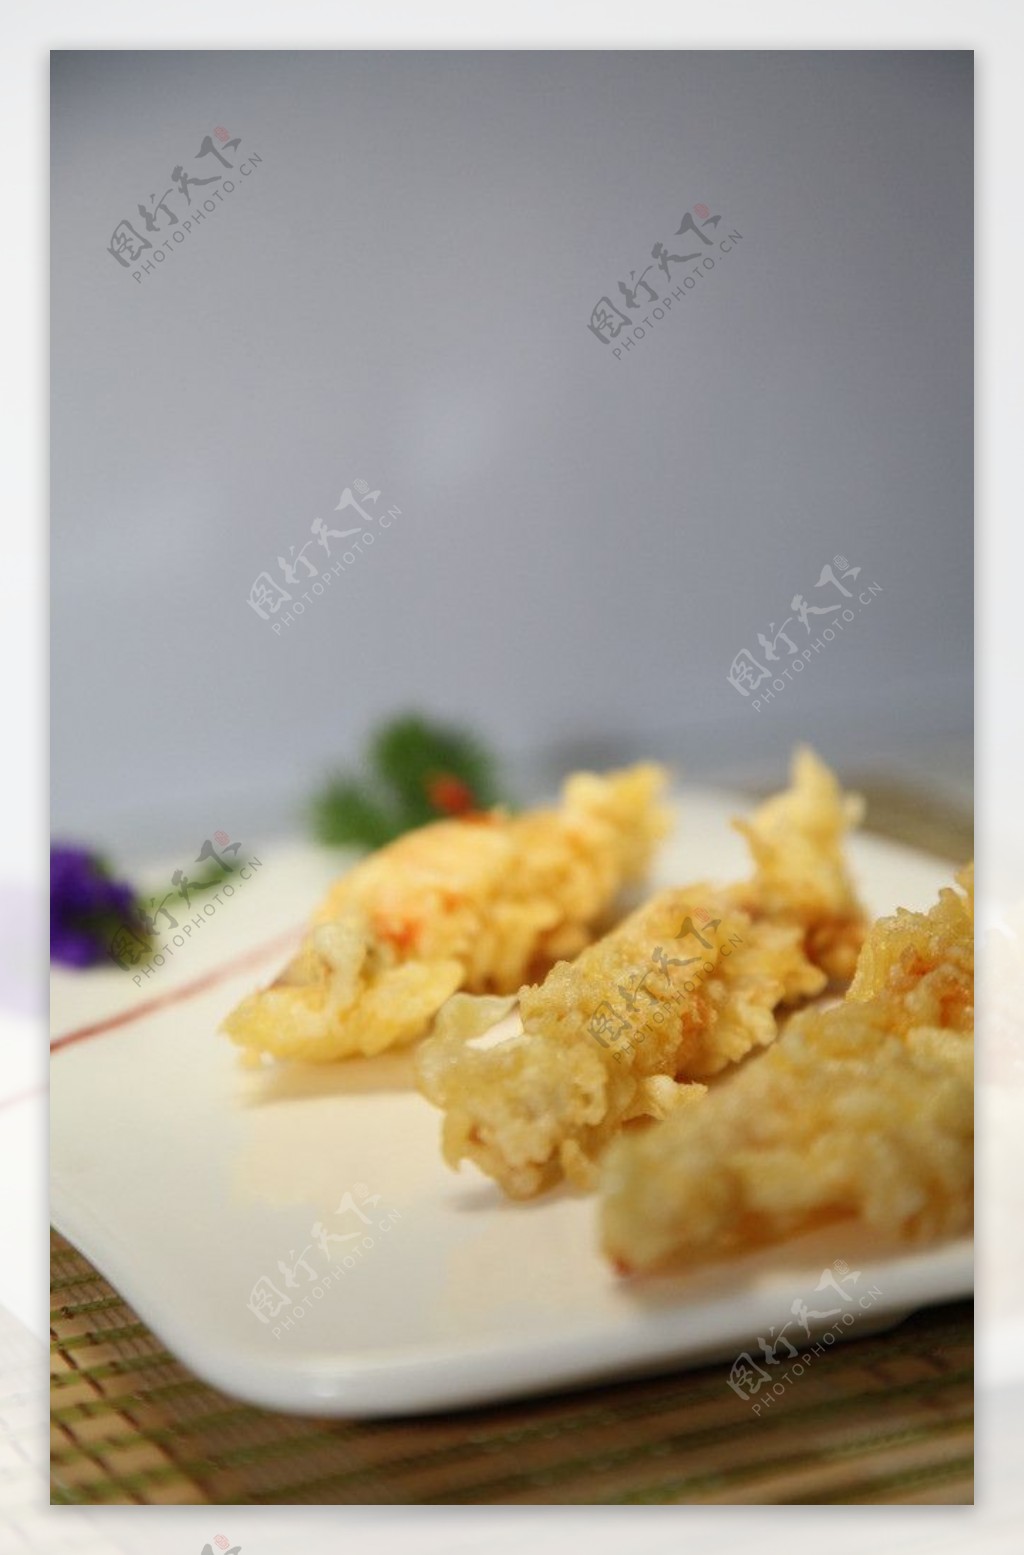 极品鲜虾天妇罗日式图片